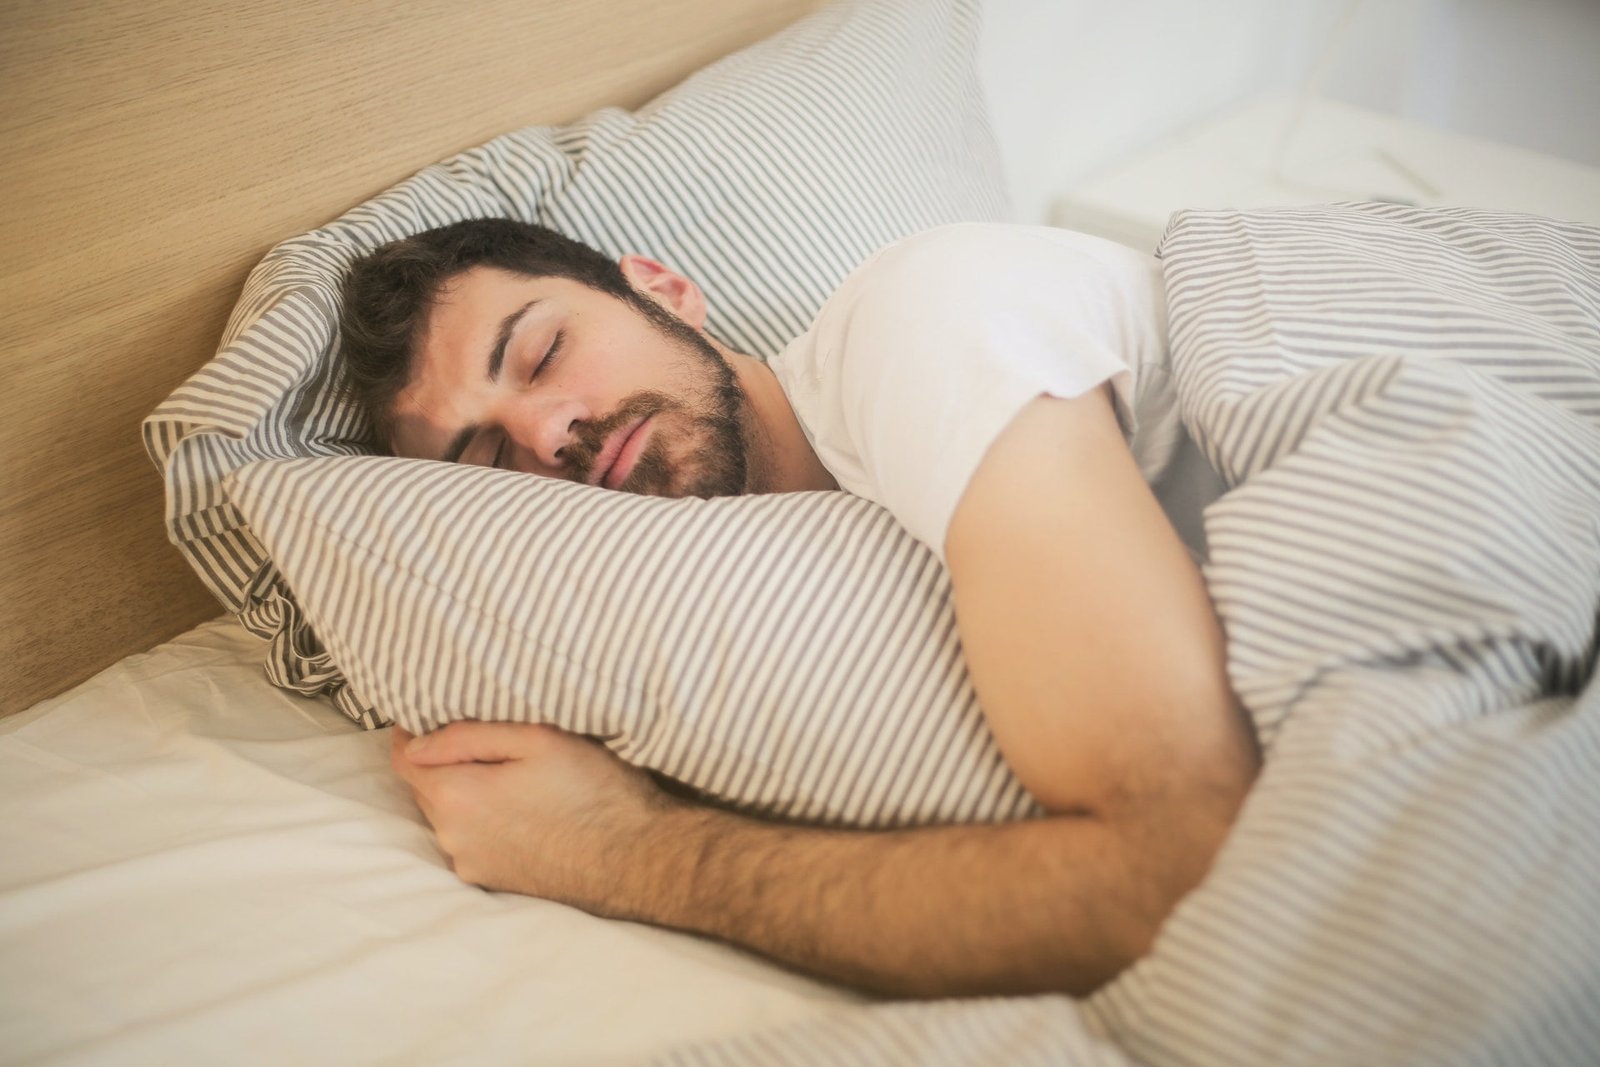 Top tips to Sleep well